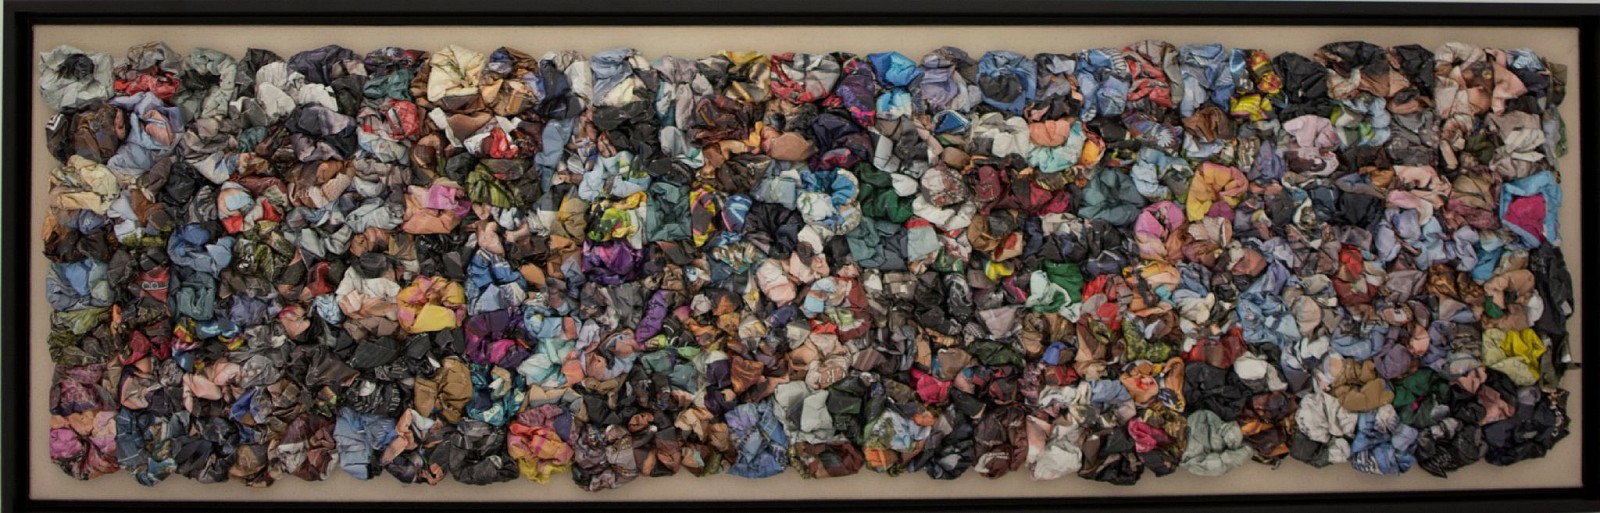 ALEJANDRA  PADILLA, Petalos de Colores "" Julieta"", 2000/16
collage on canvas, 47 1/8 x 13 in. (120 x 33 cm)
PA-C-0121